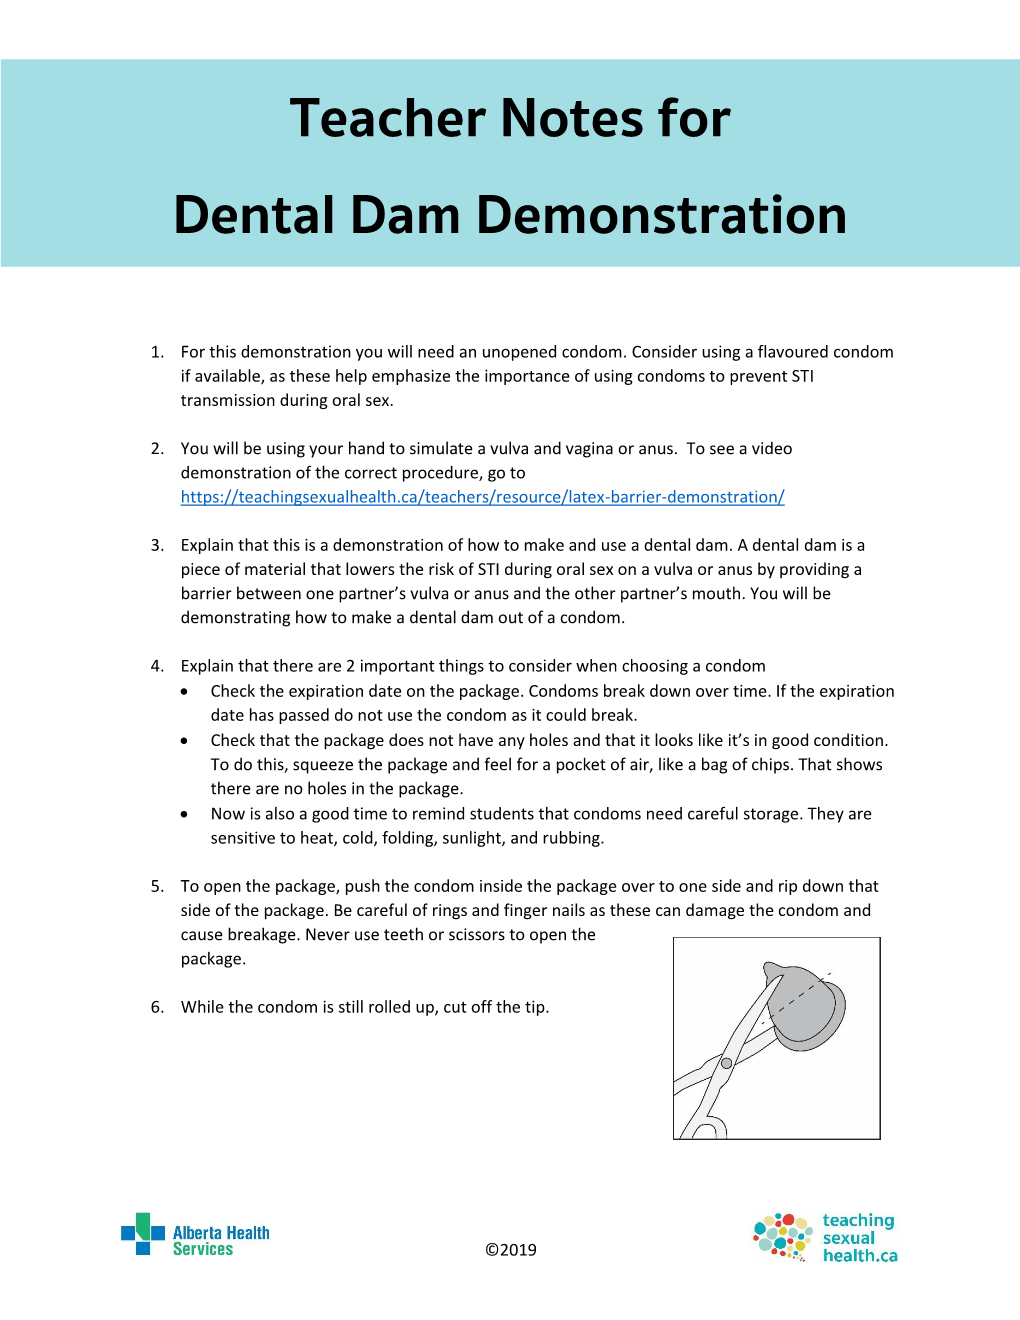 Teacher Notes for Dental Dam Demonstration